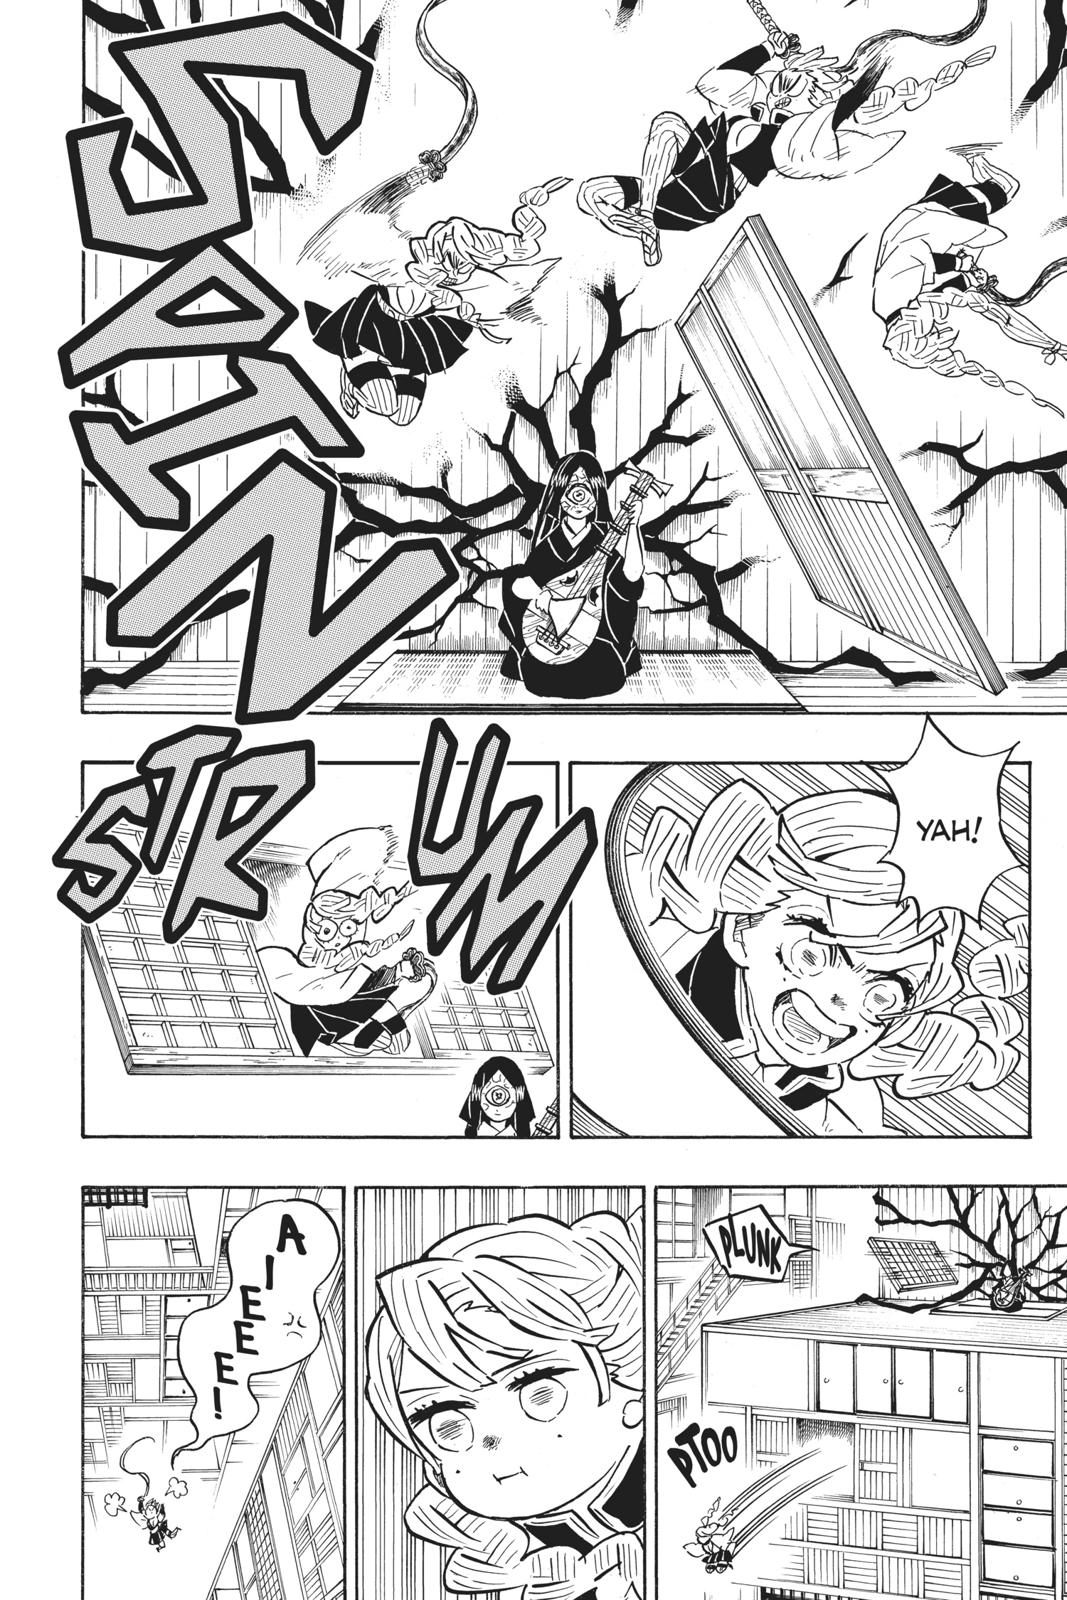 Demon Slayer Manga Manga Chapter - 164 - image 8